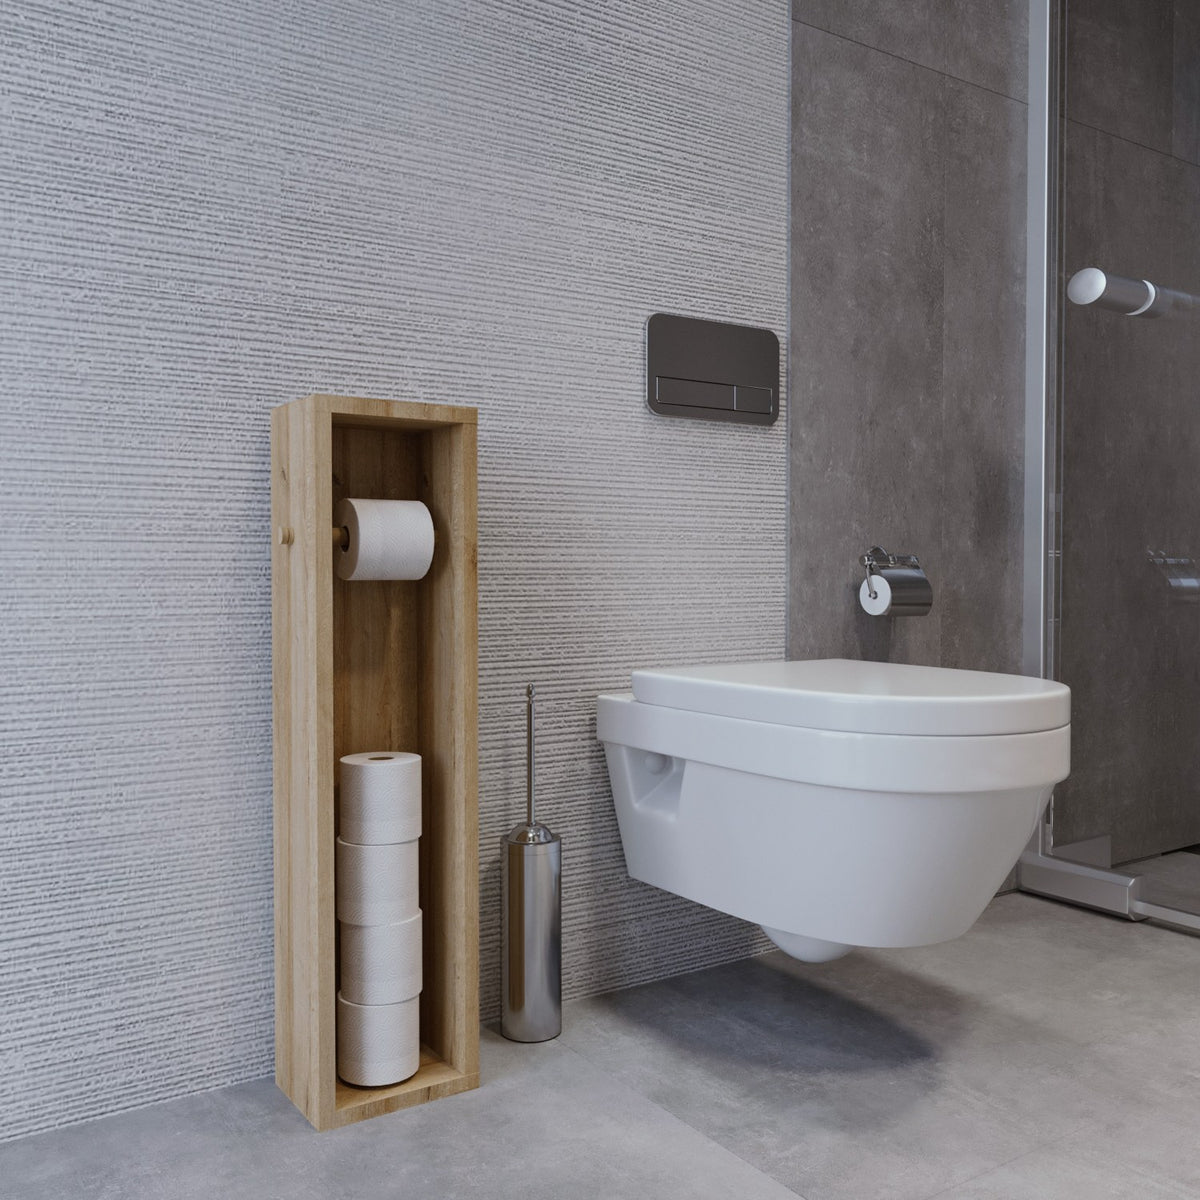 Dulap de baie cu suport pentru hartia igienica,100x25x9 cm, imitatie lemn